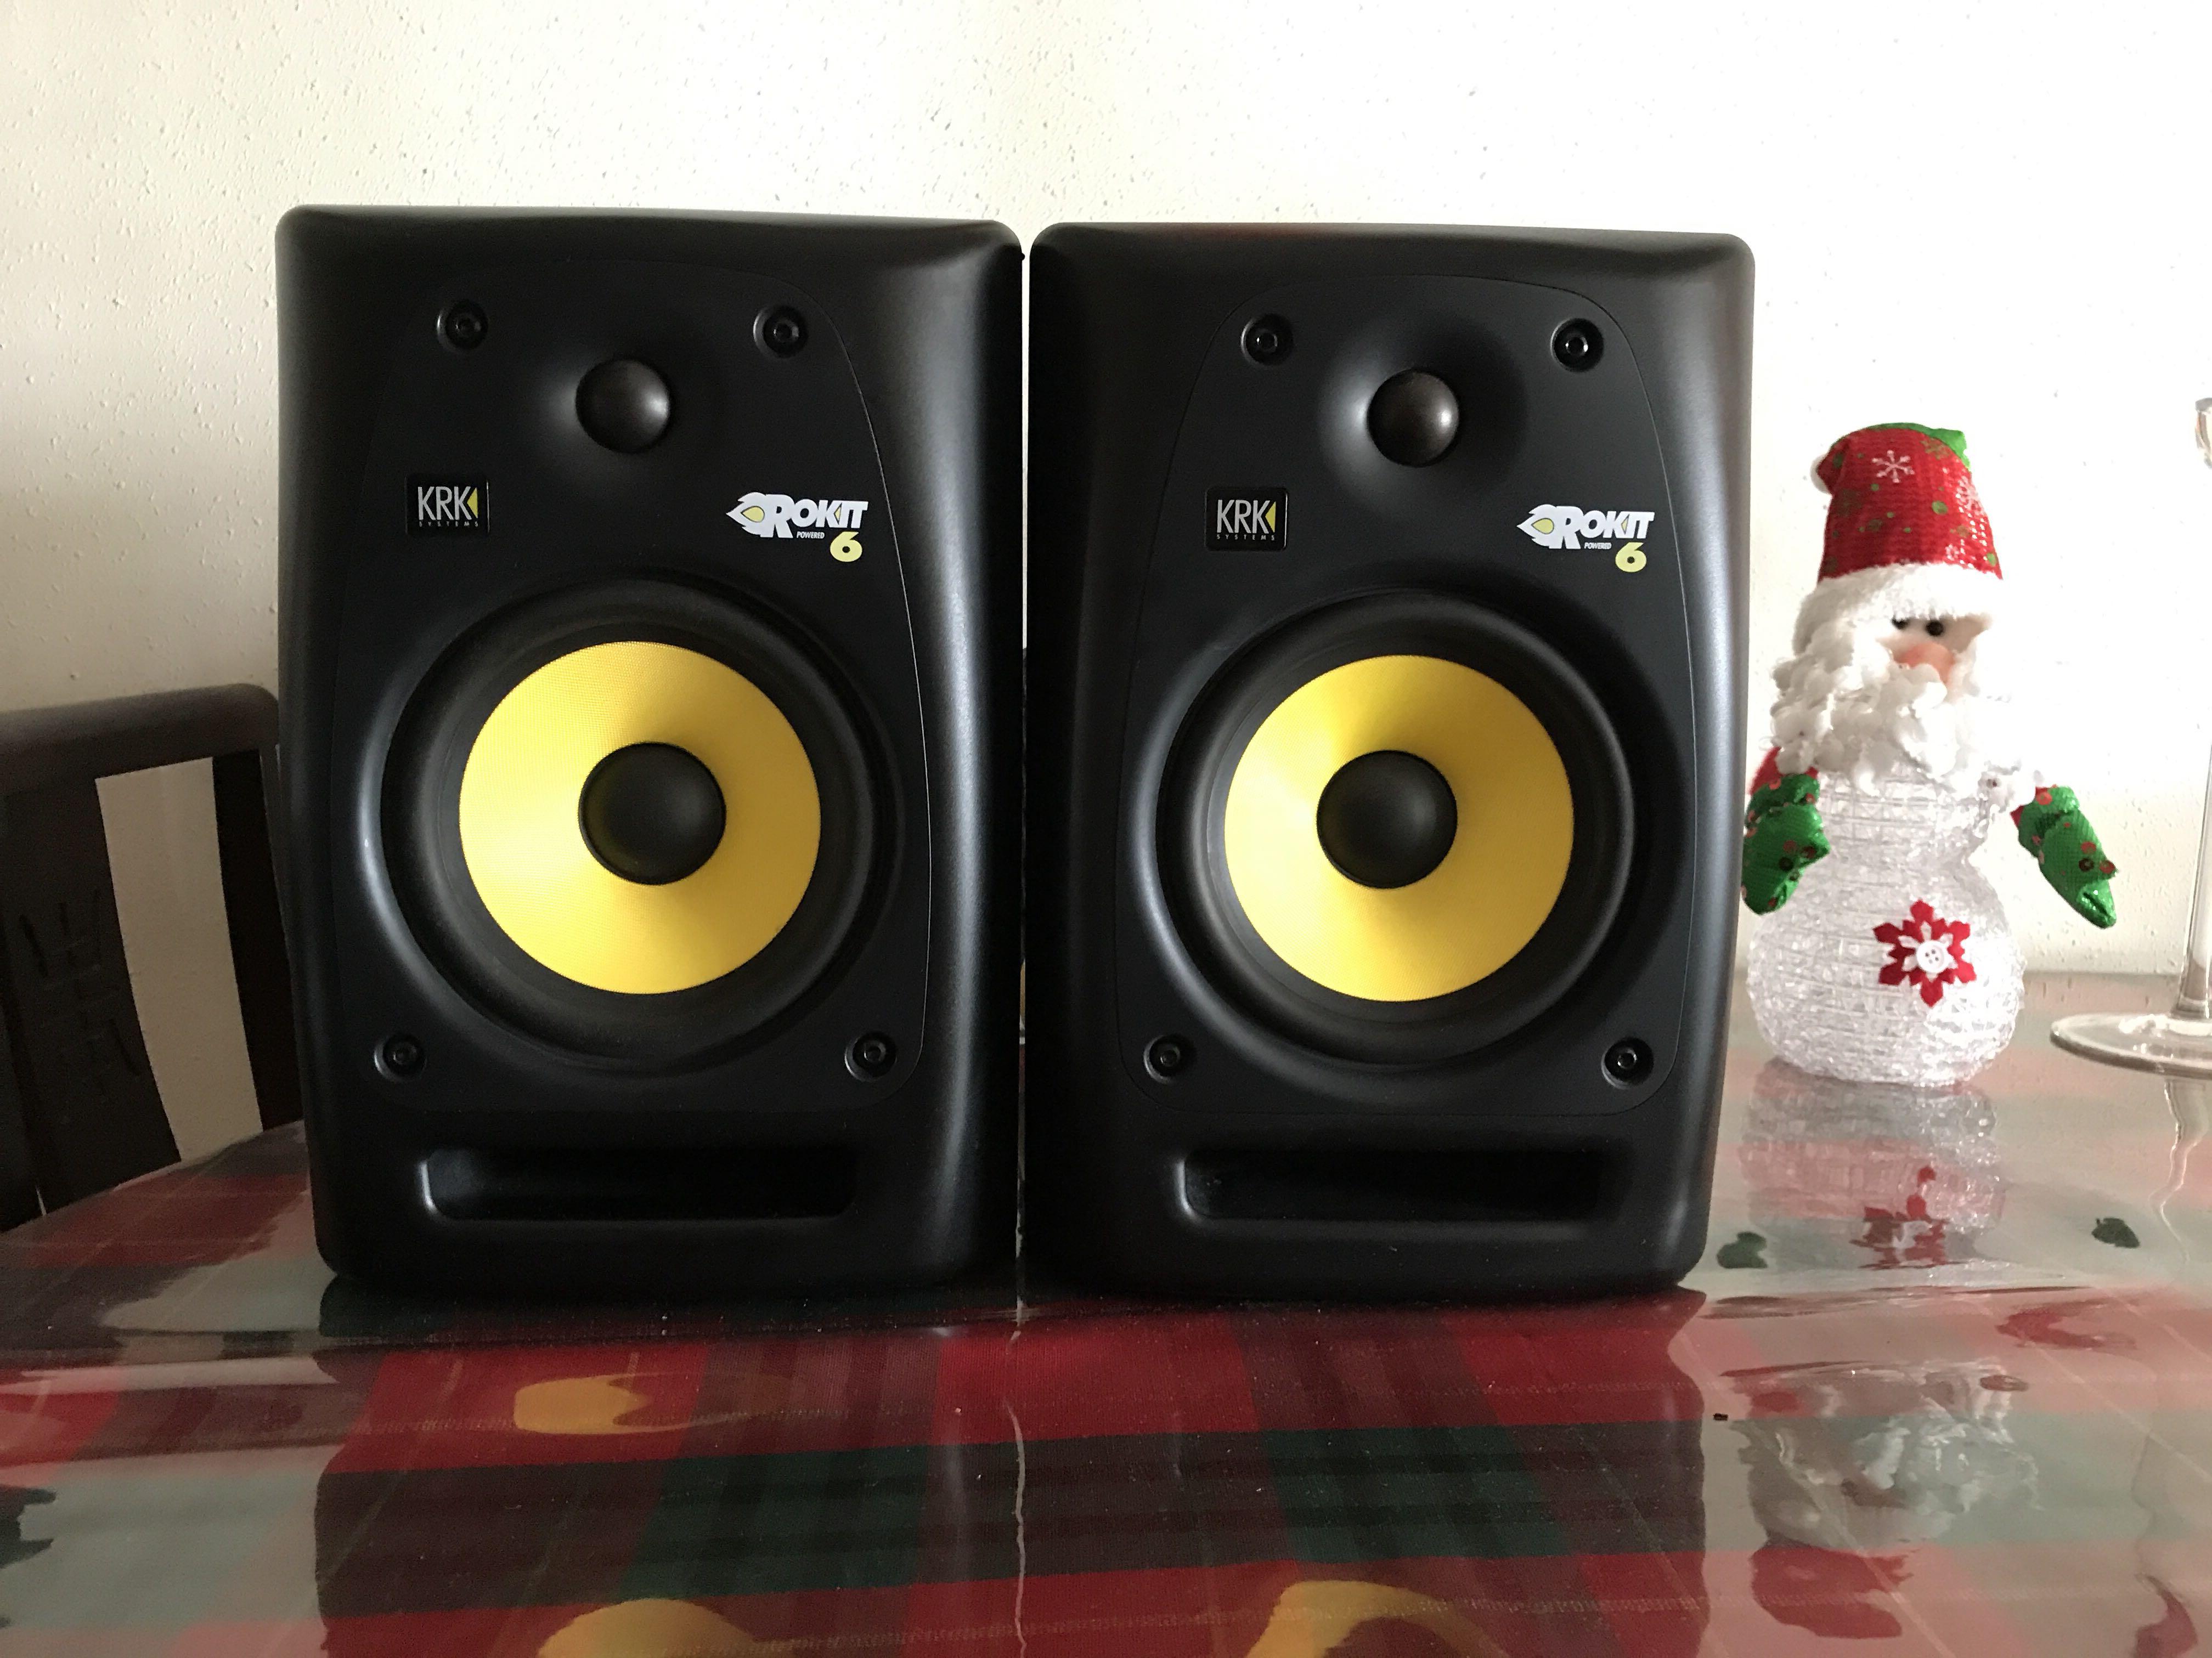 rokit 6 speakers